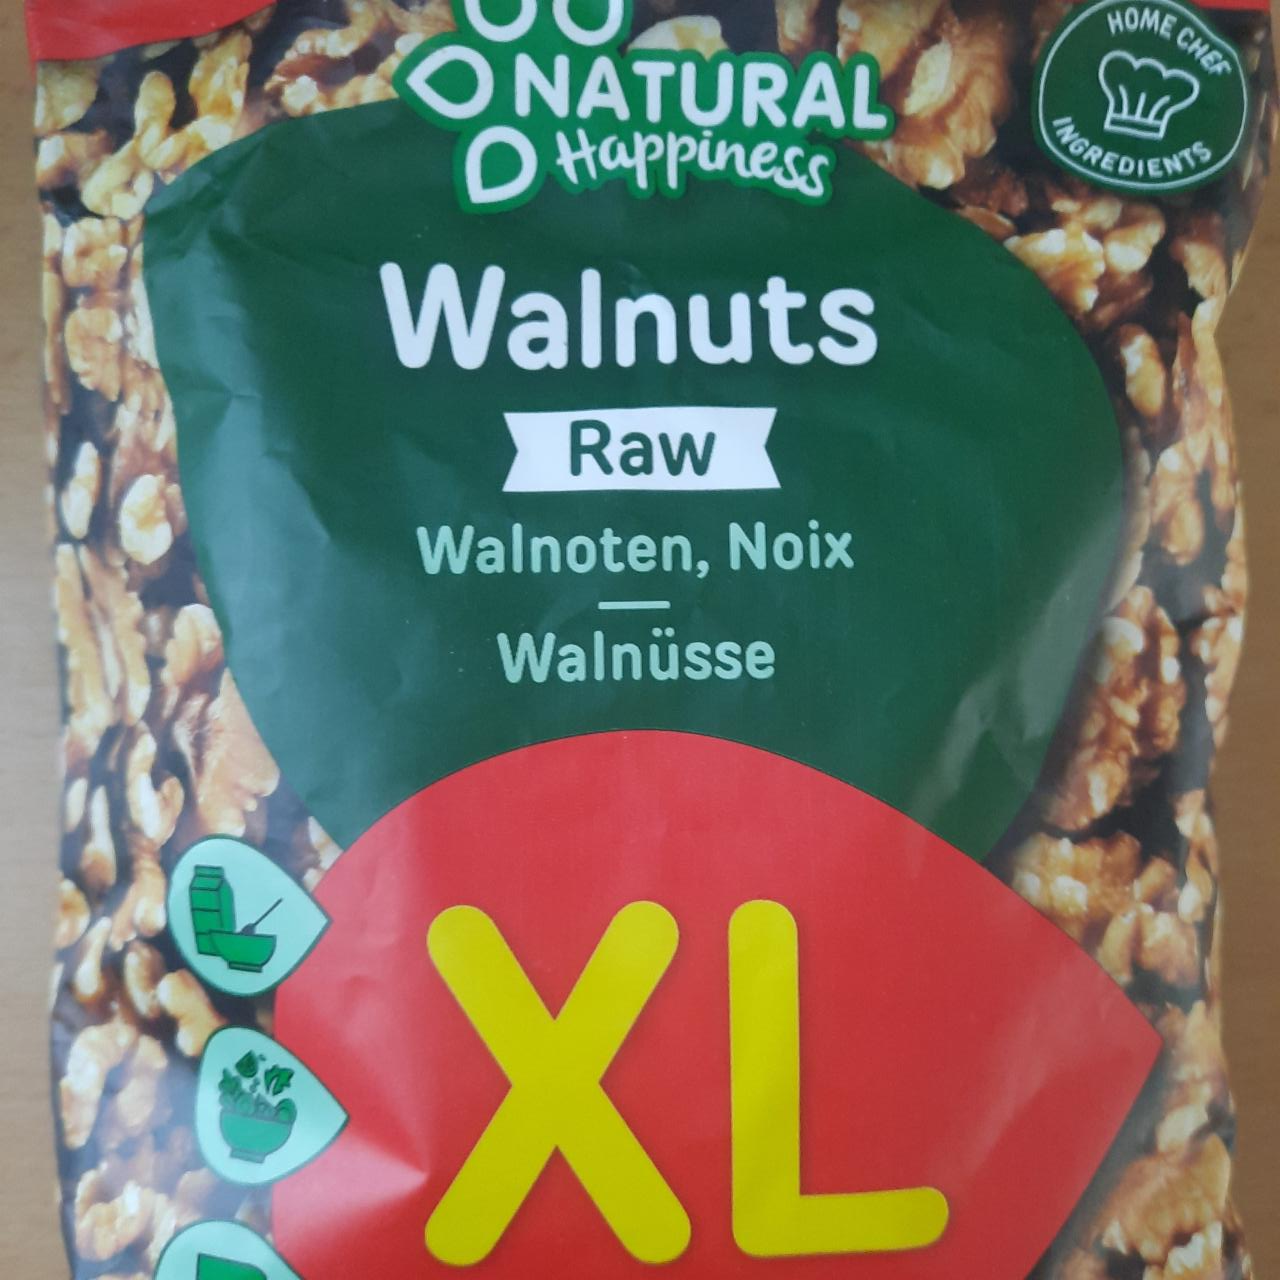 Fotografie - Raw Walnuts Natural Happiness